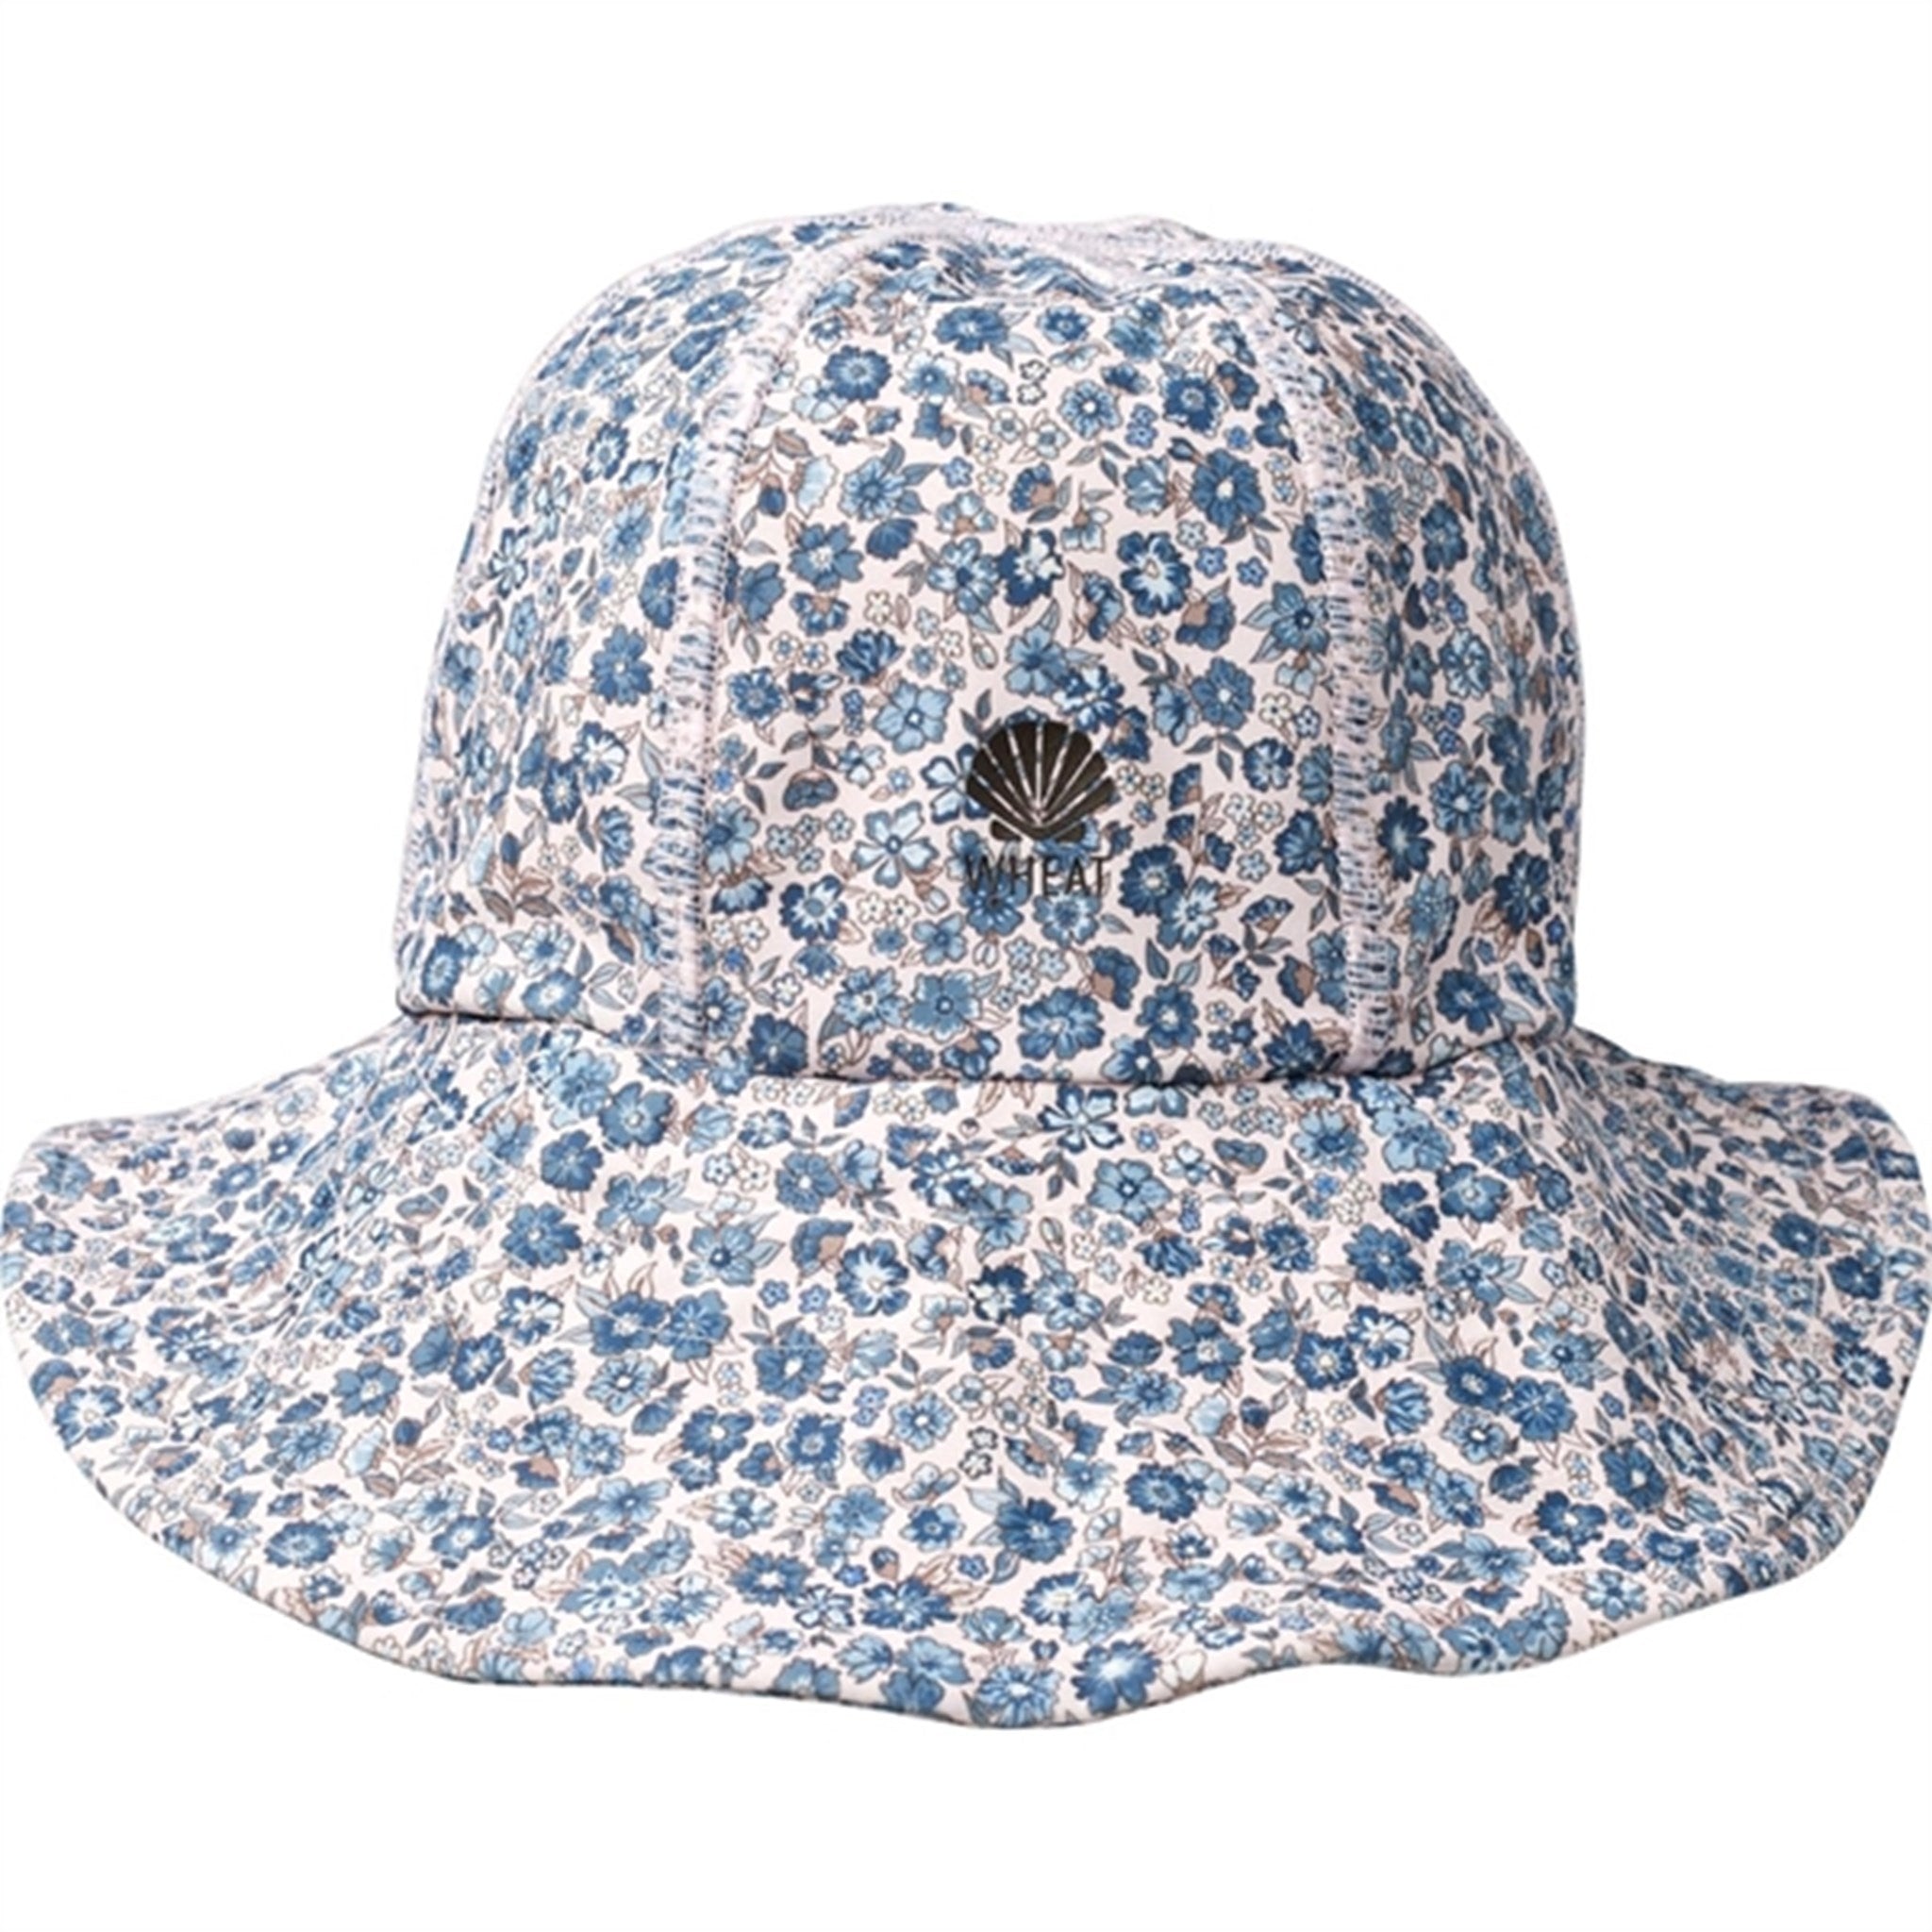 Wheat Blue Flower Meadow UV Sun Hat - Size 9-24 m/48-51 cm